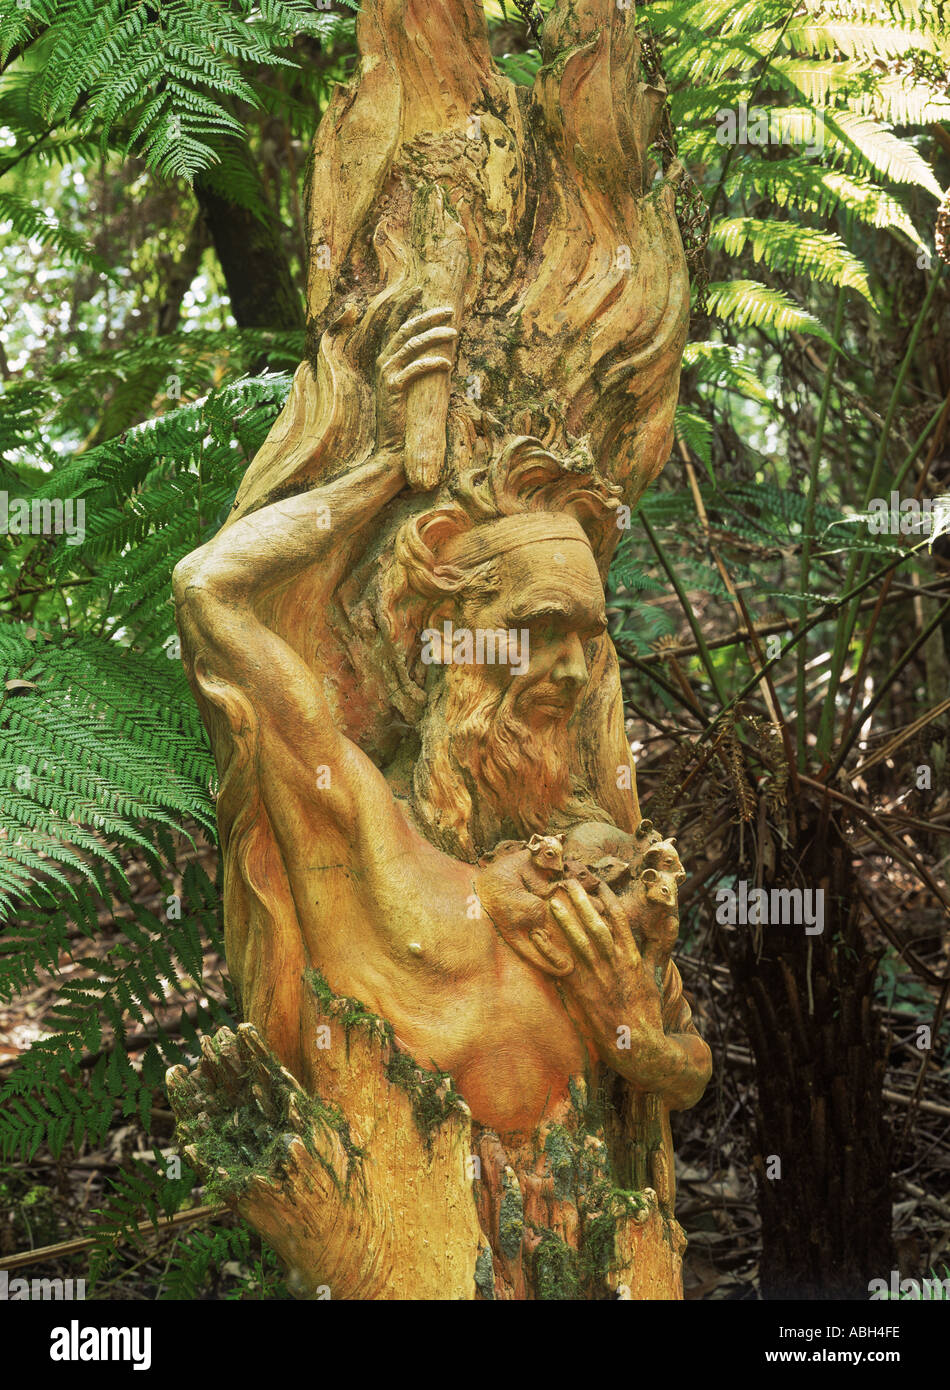 Aboriginal people sculpture at William Ricketts Sanctuary in Victoria Australia Stock Photo